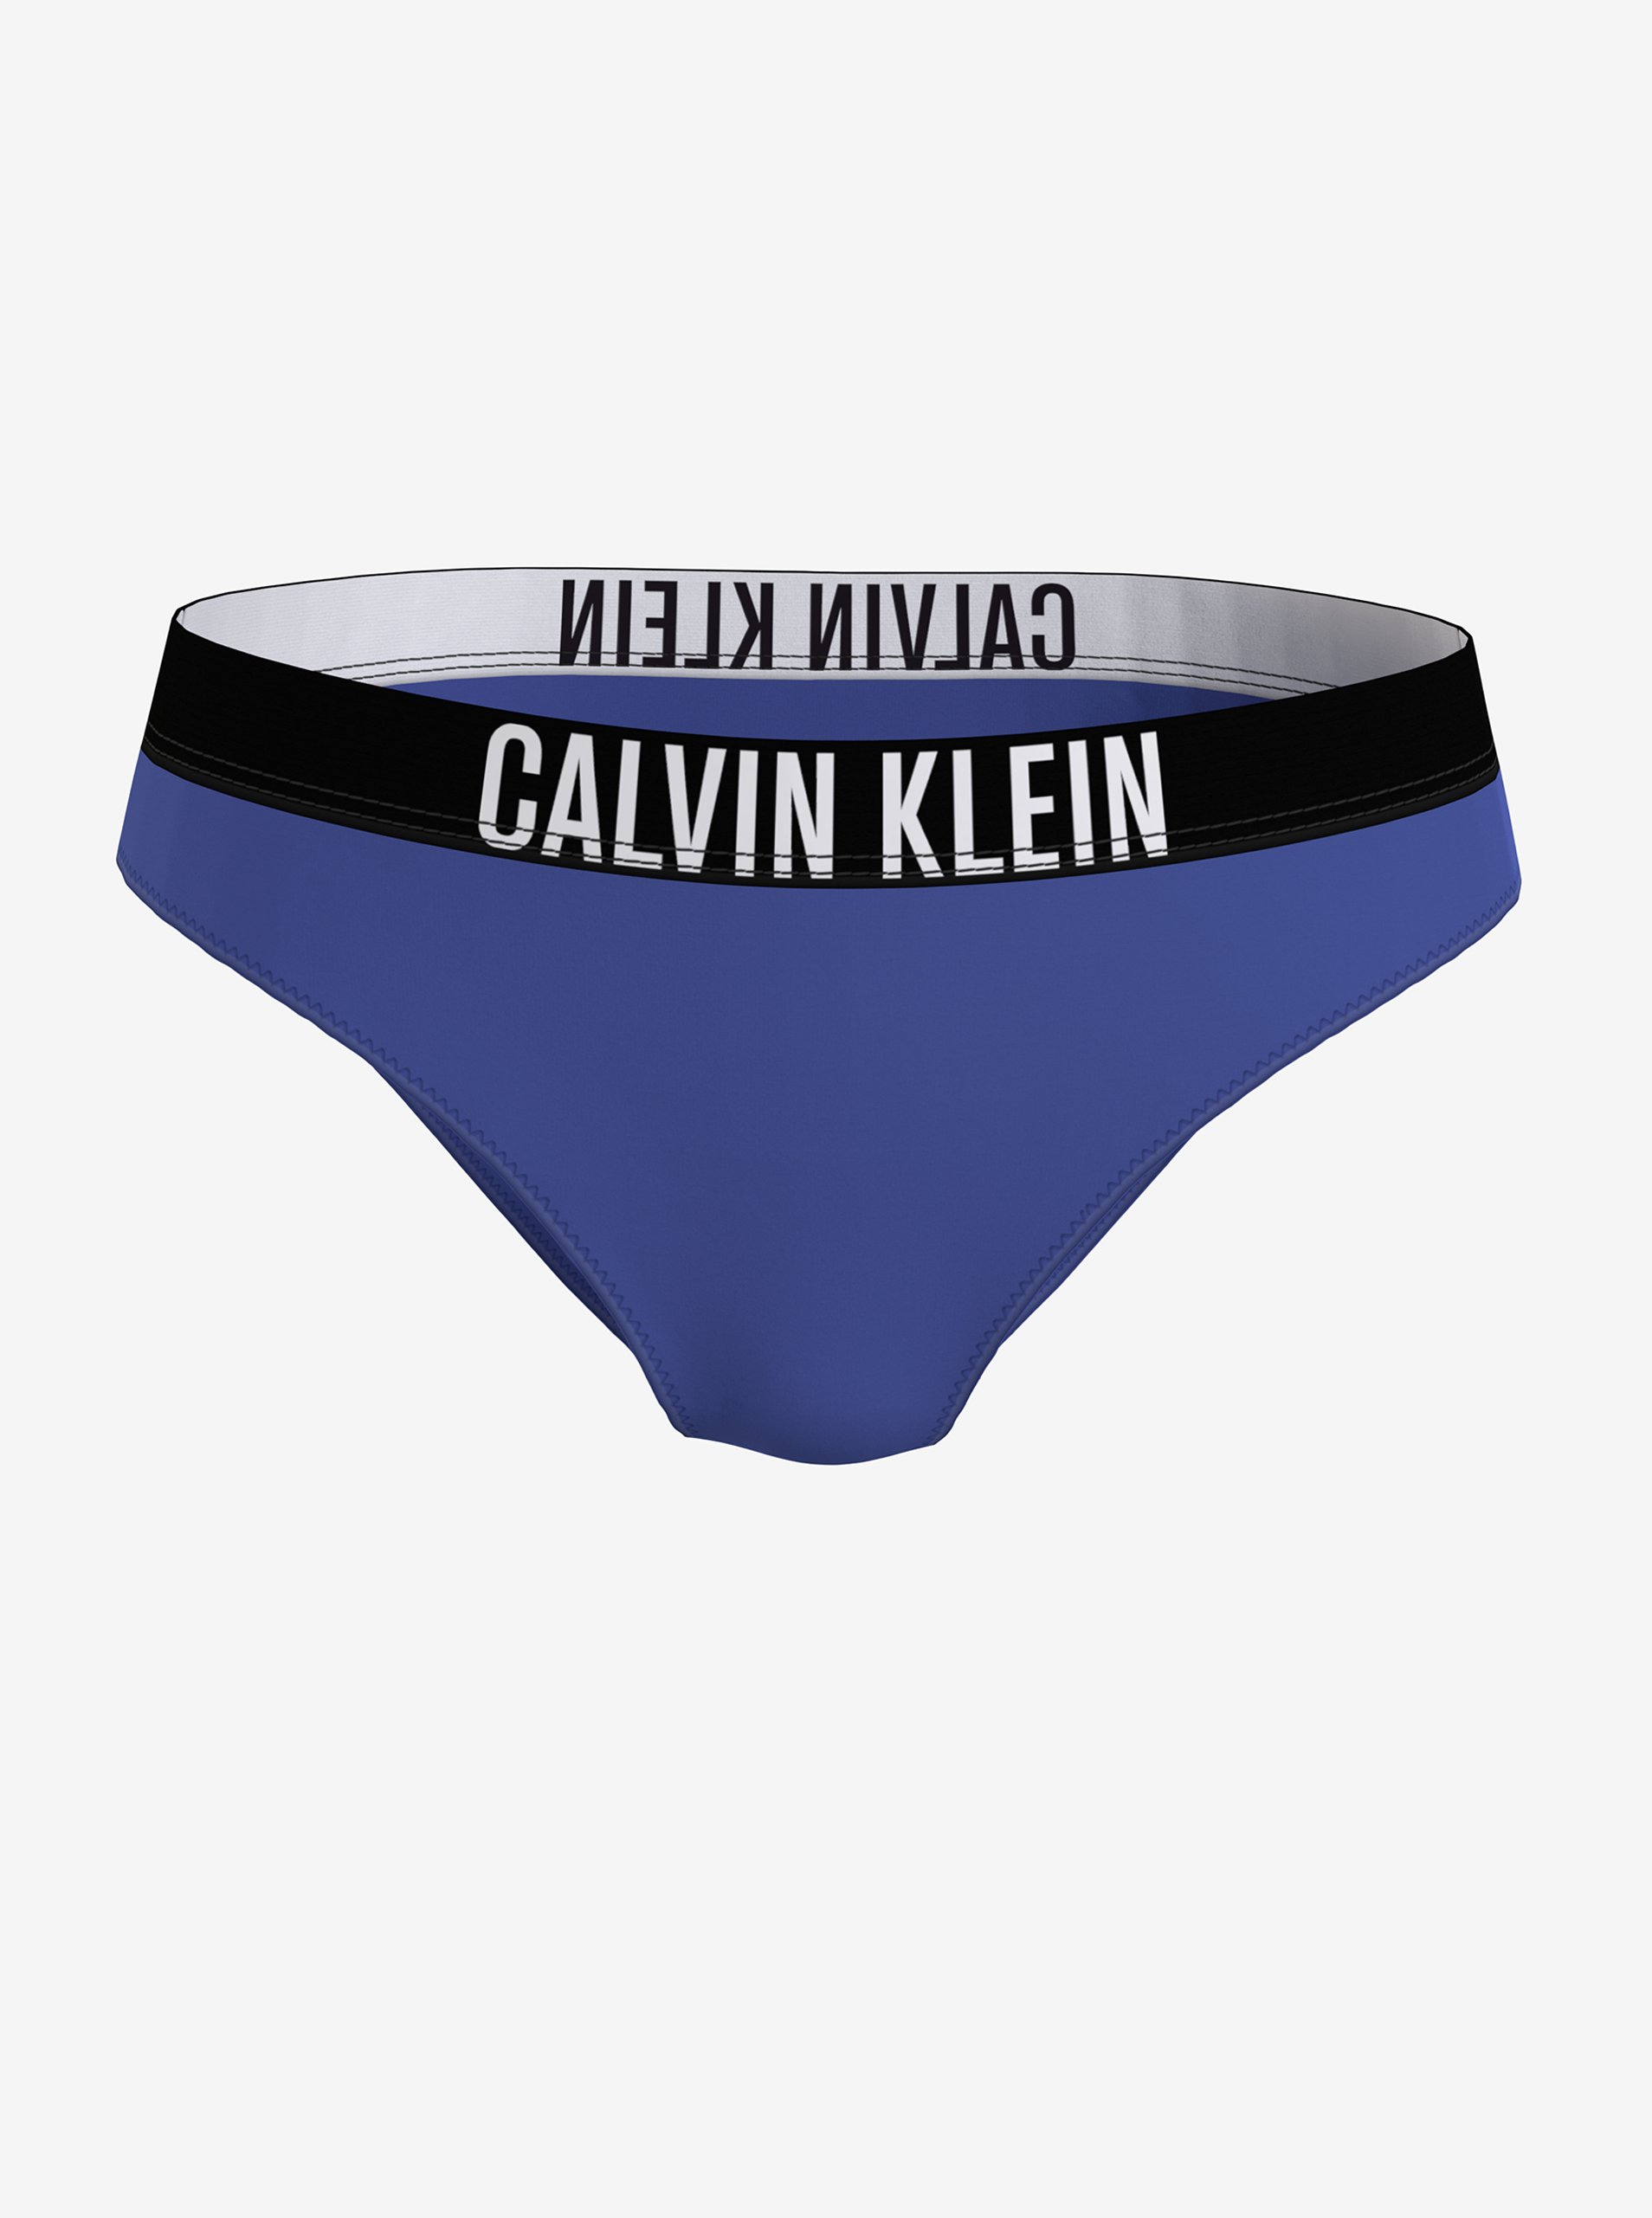 Lacno Modrý dámsky spodný diel plaviek Calvin Klein